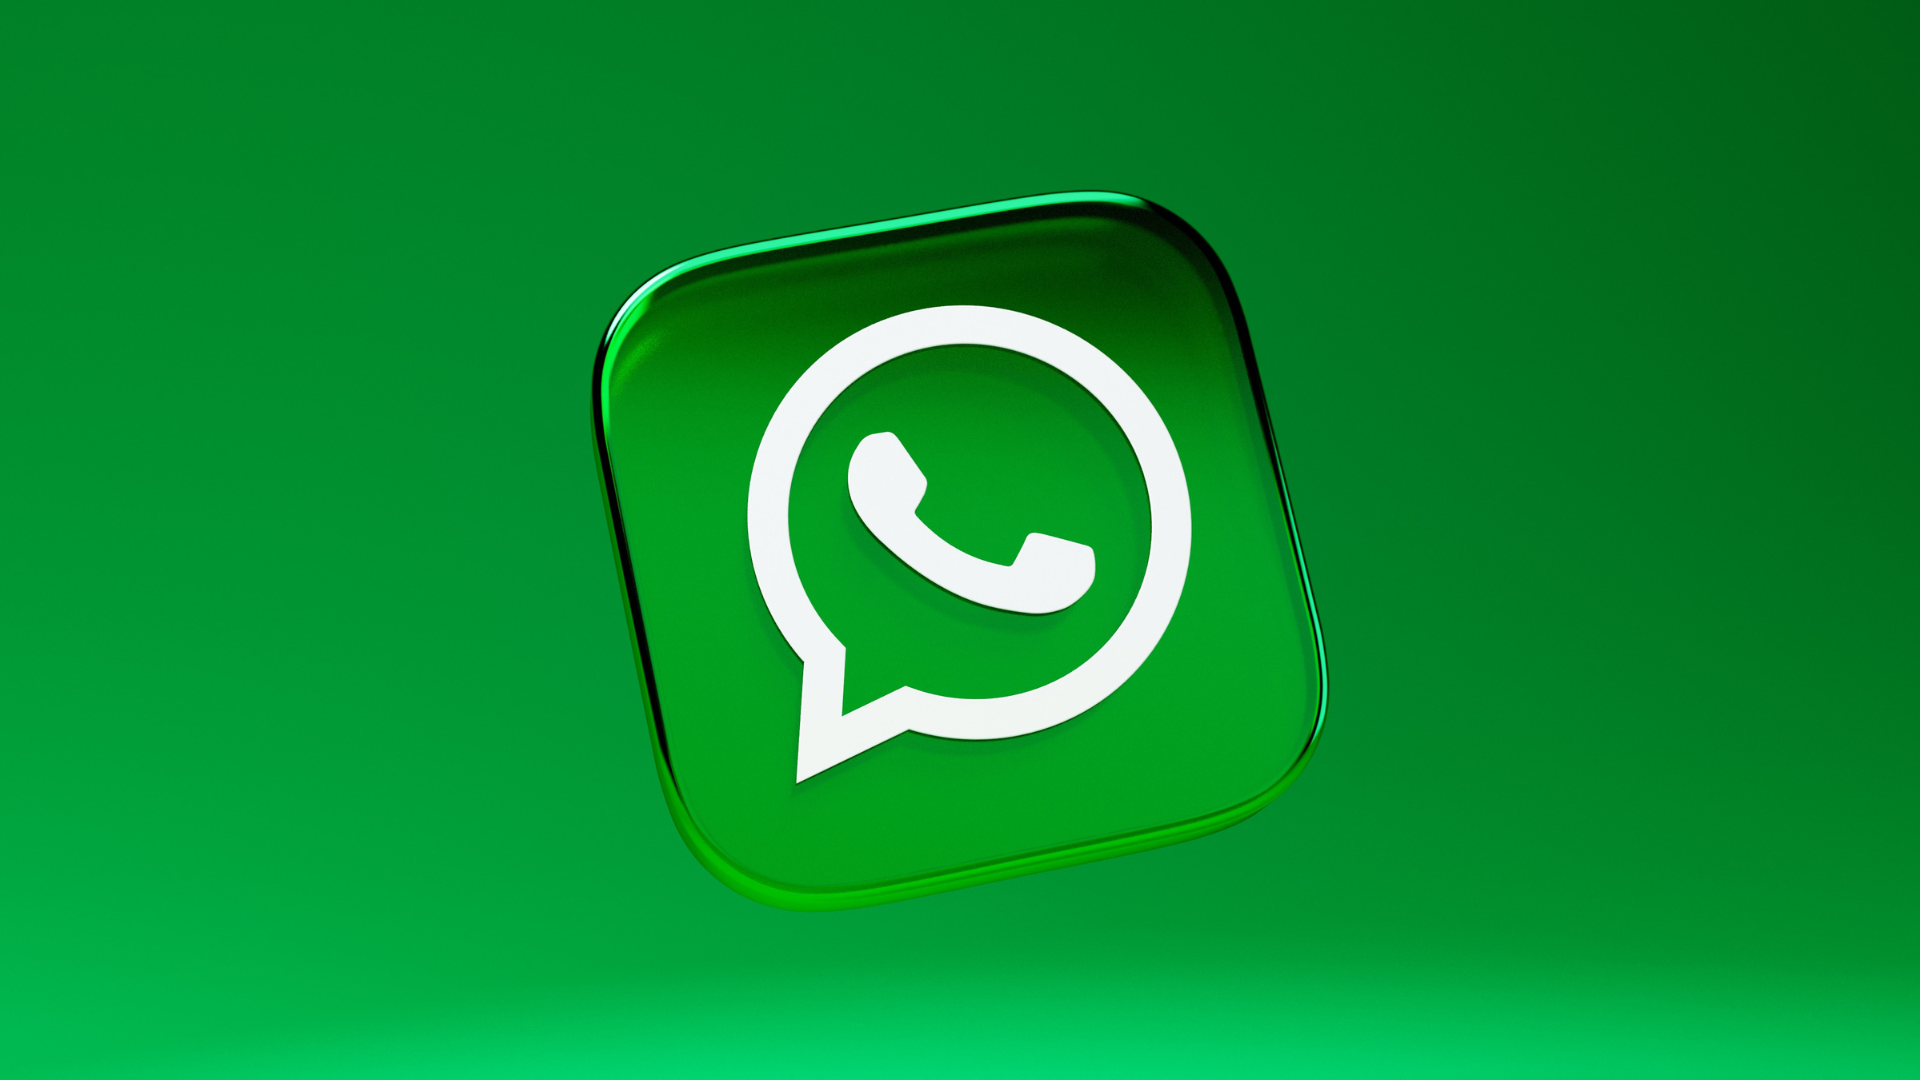 Agora é possível iniciar conversa no WhatsApp sem salvar o contato! Veja como fazer